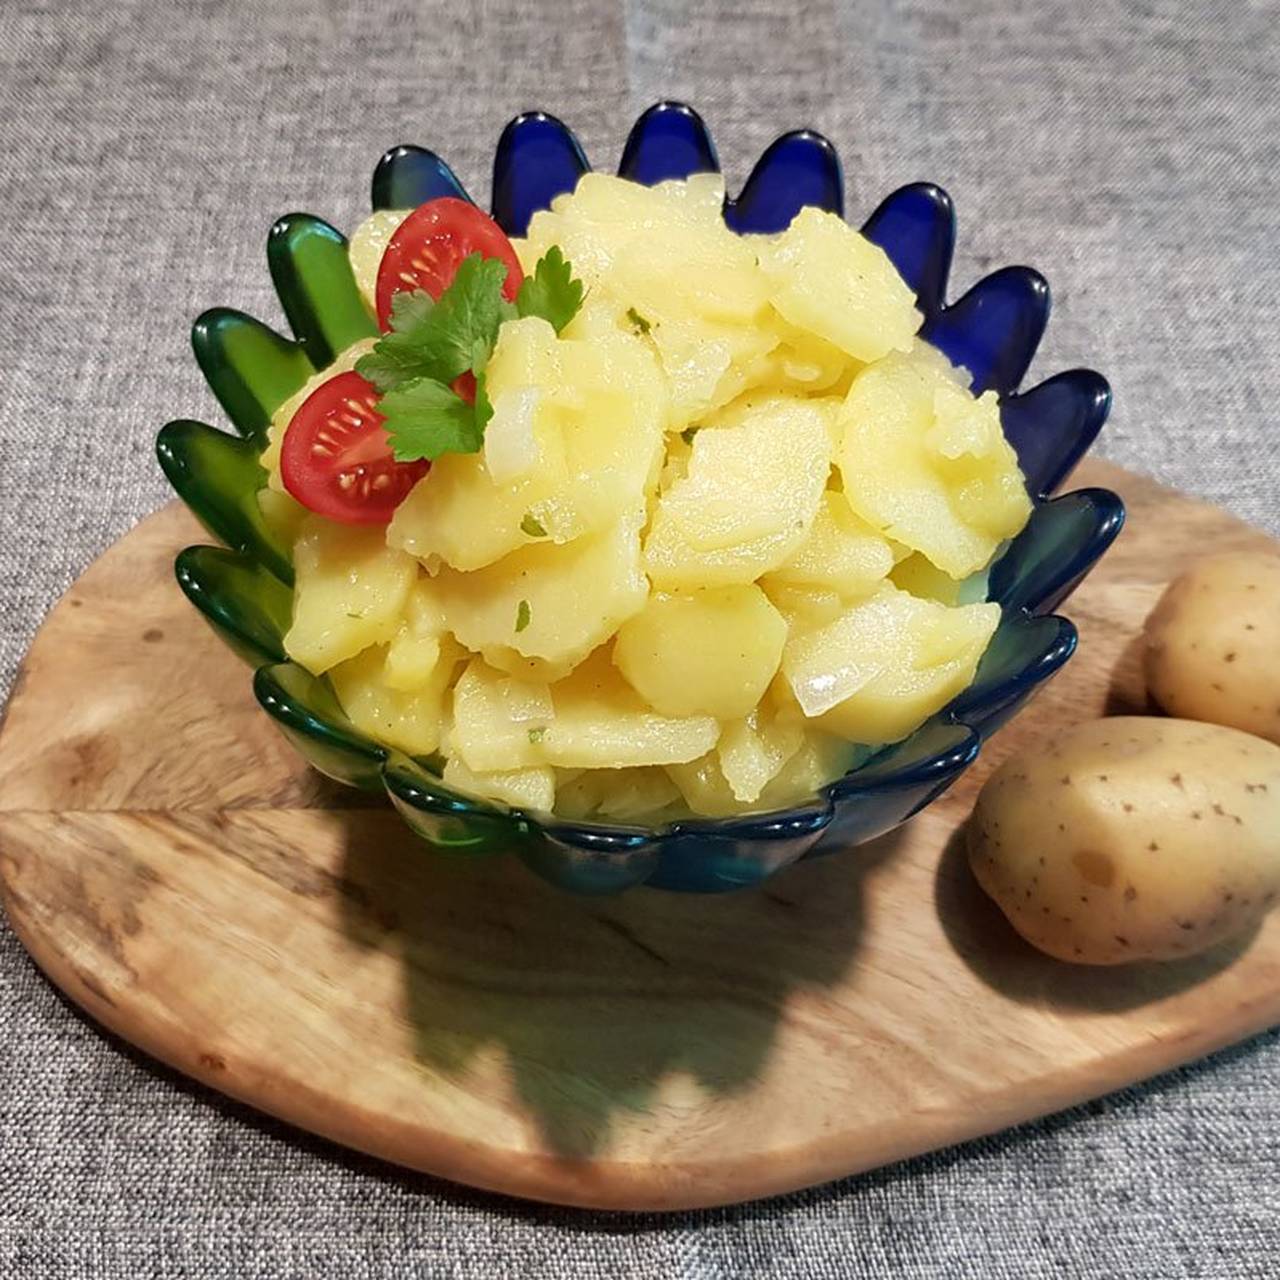  Kartoffelsalat Hintergrundbild 1280x1280. Veganer Kartoffelsalat nach schwäbischer Art